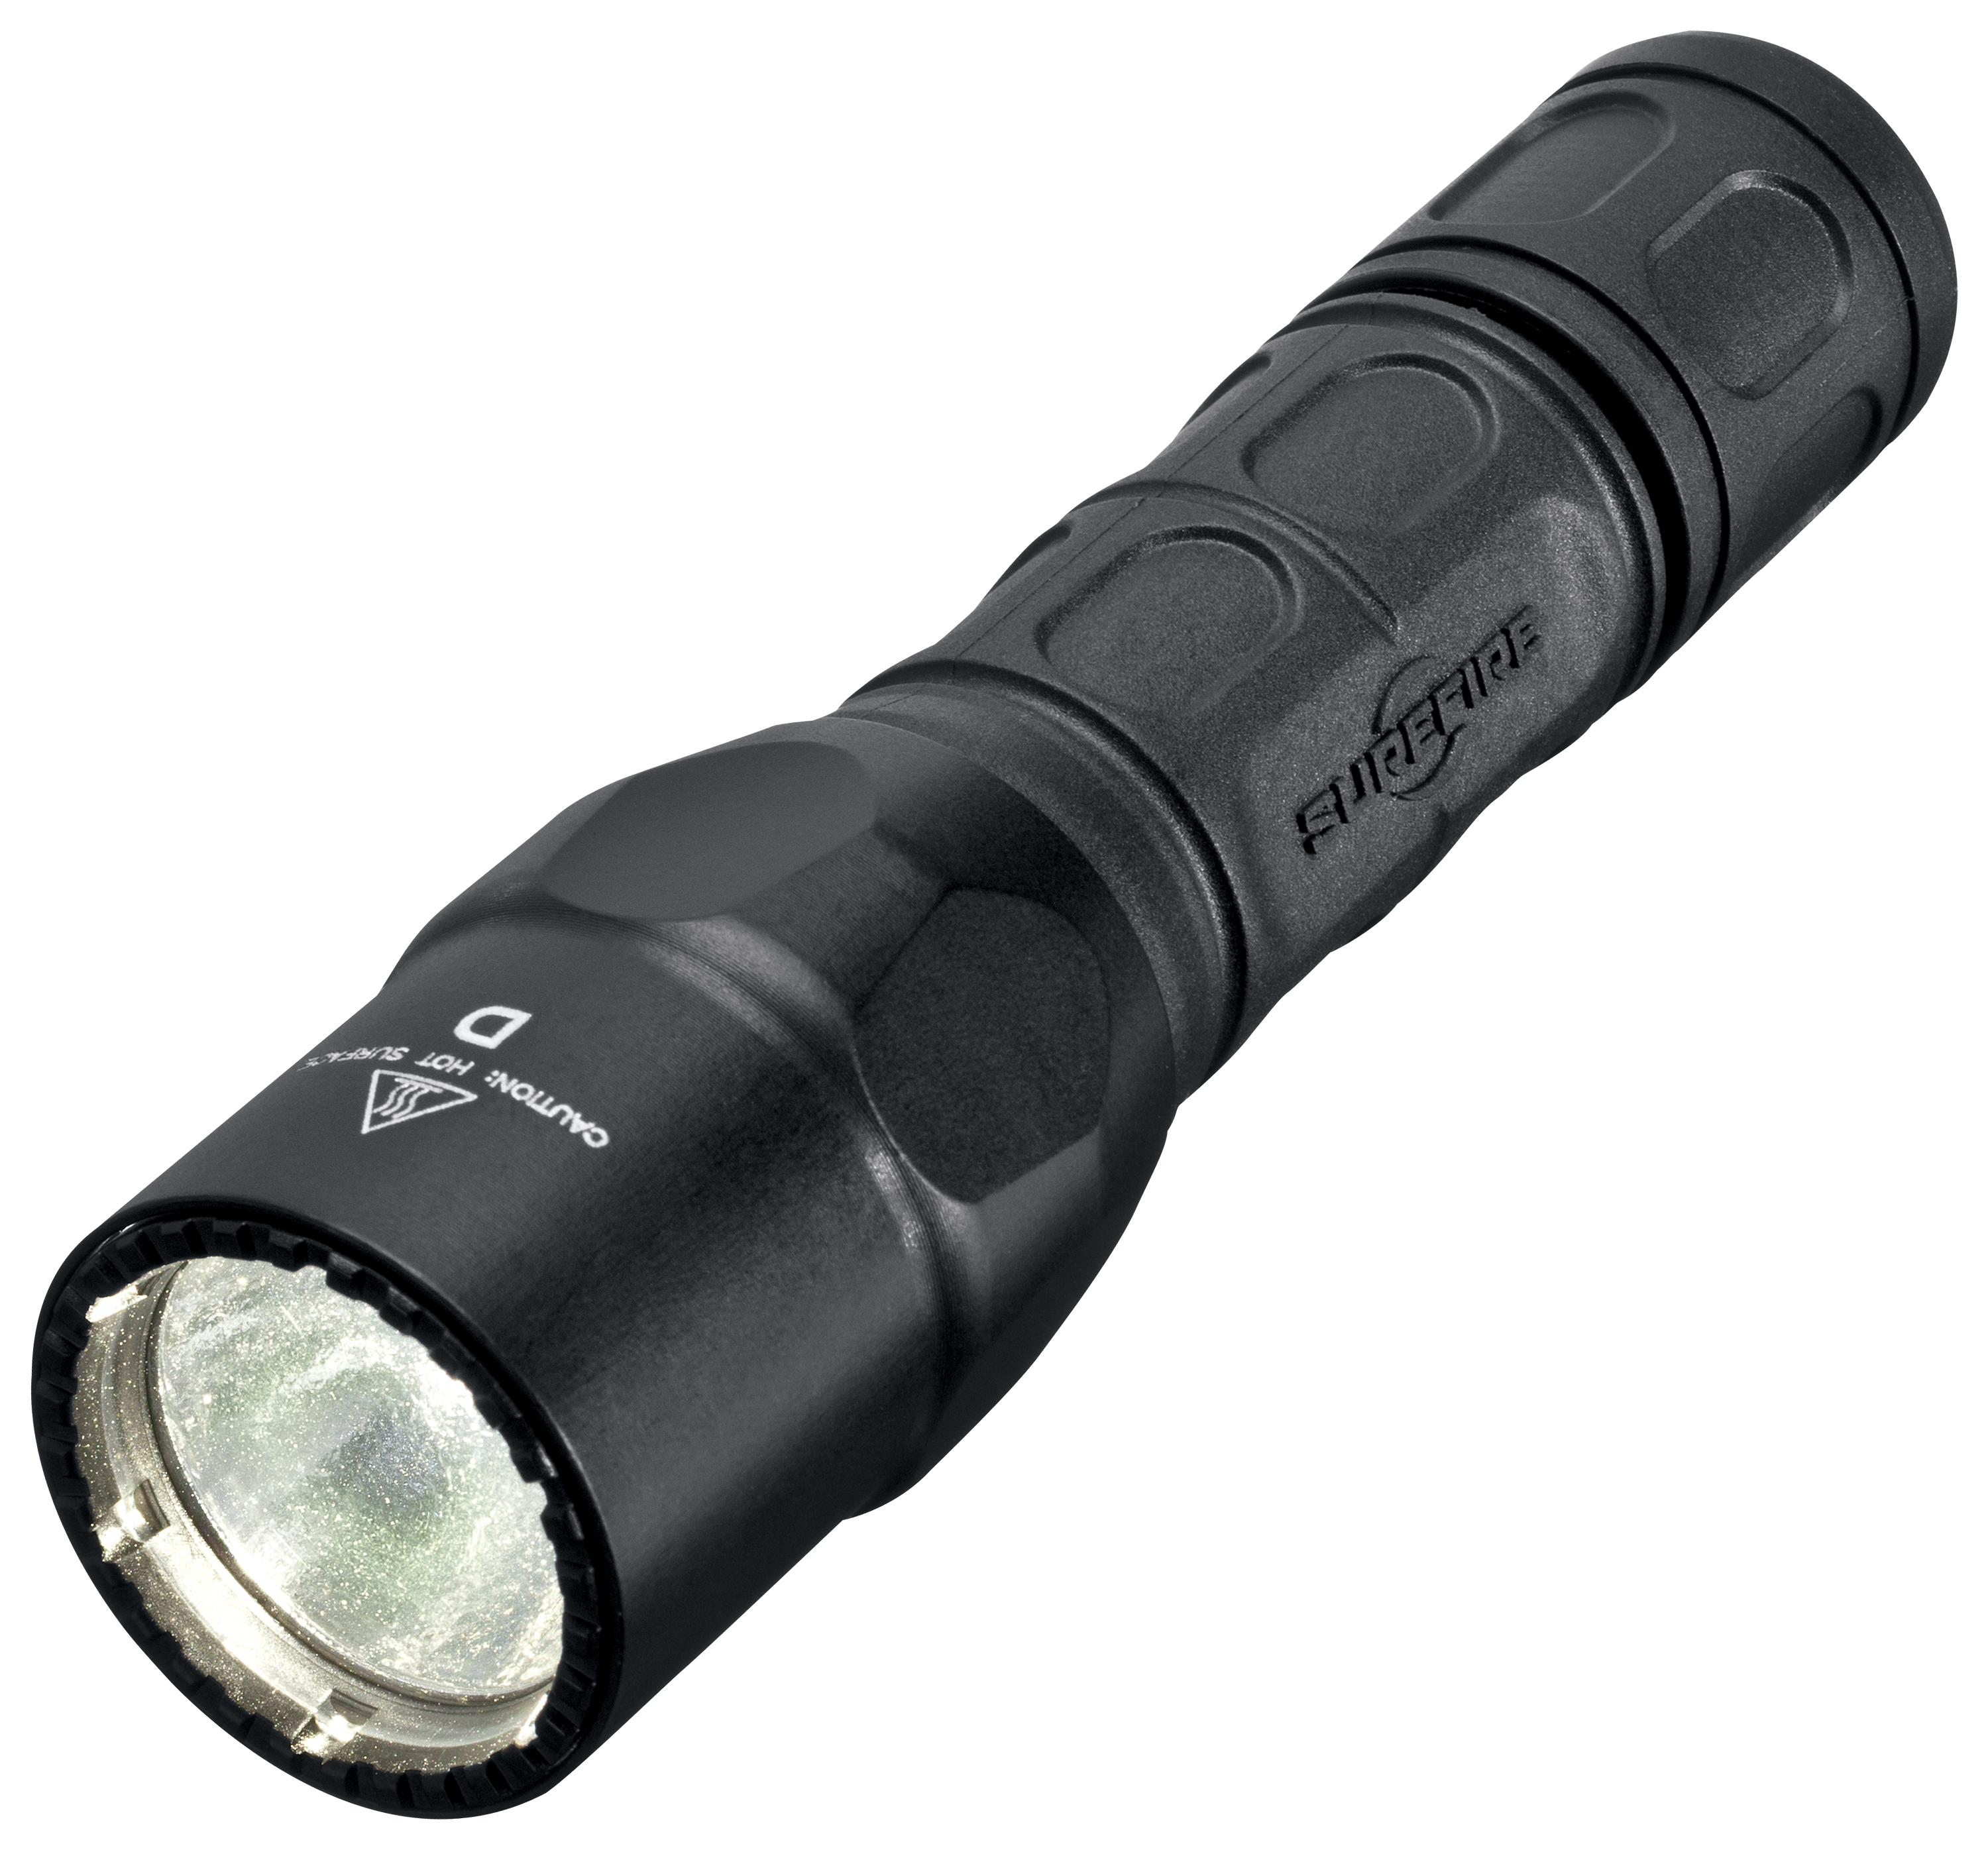 Surefire G2X LED Flashlight Pro Shops